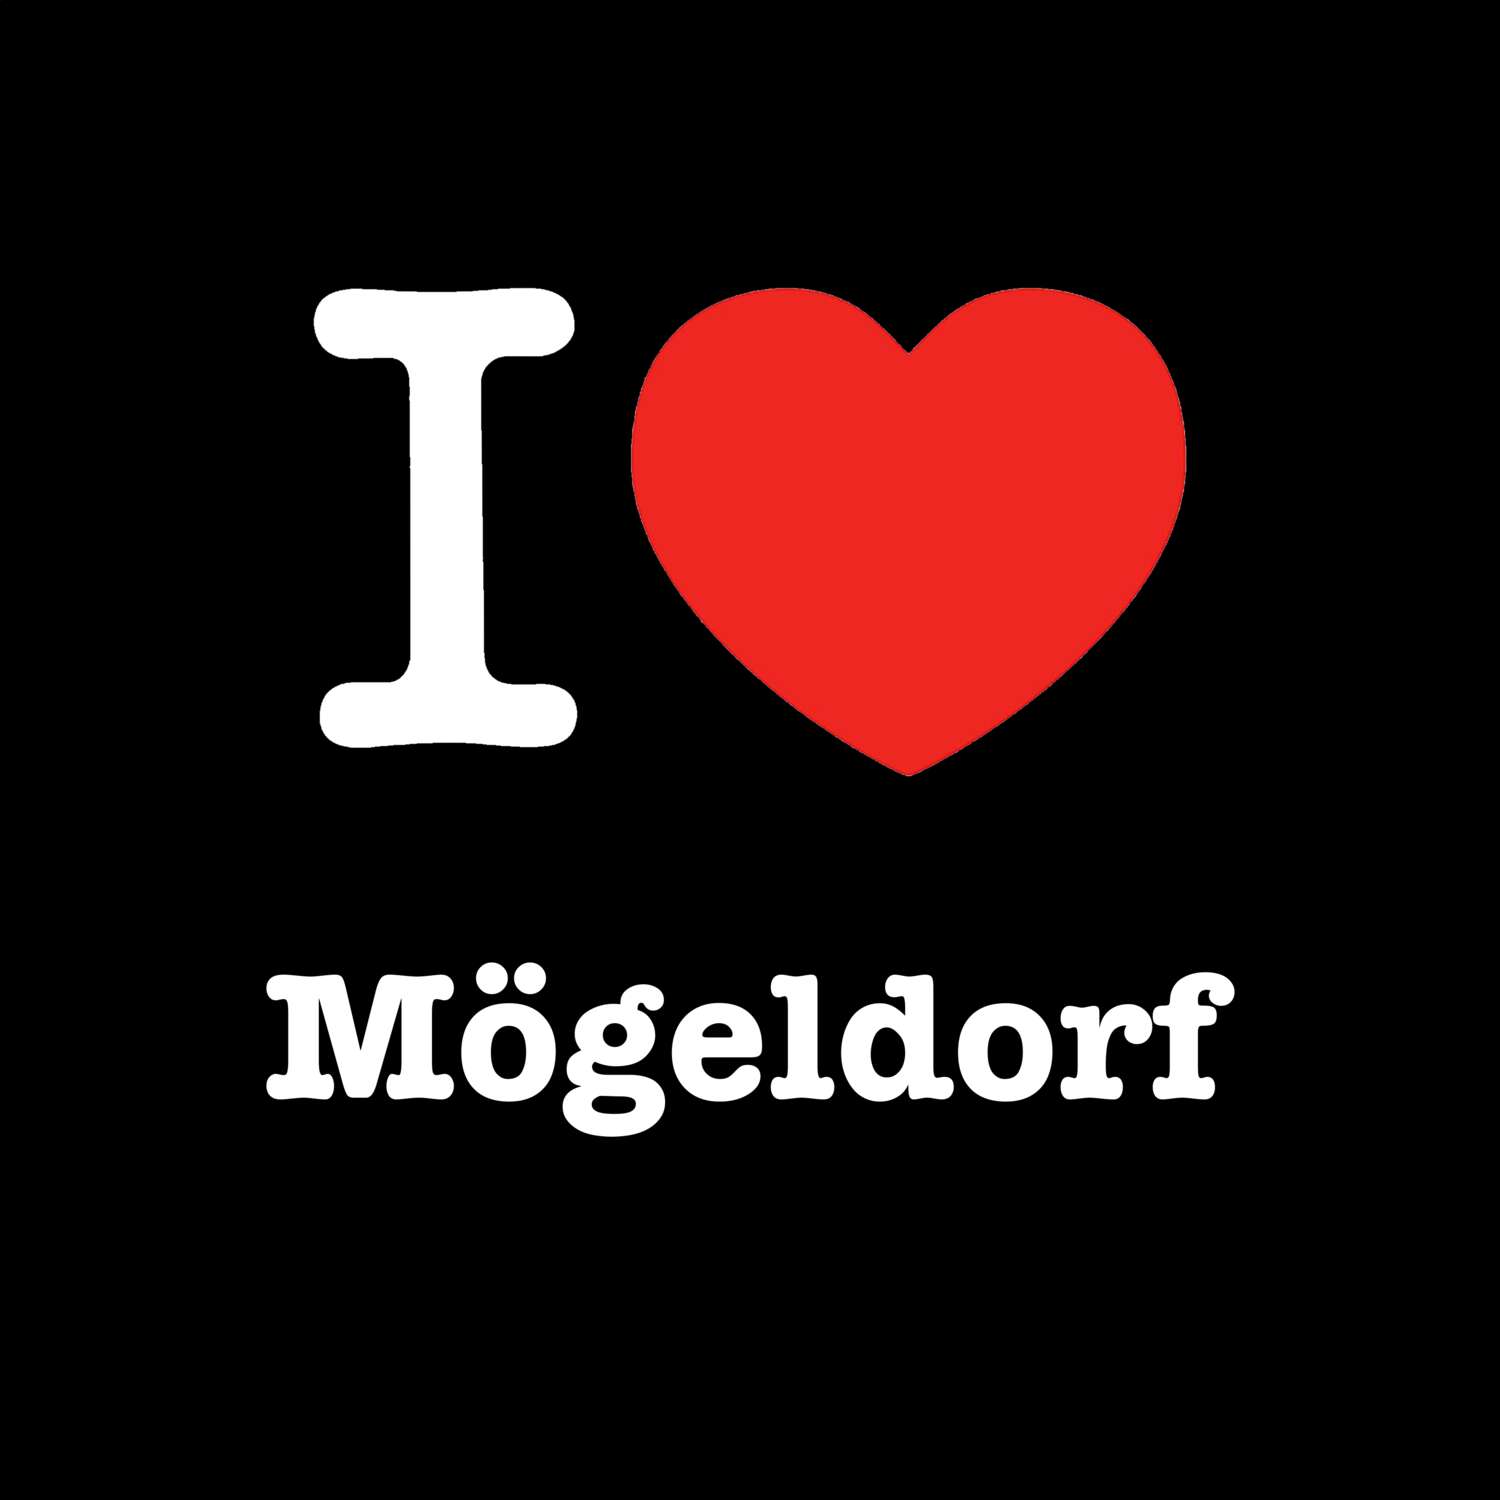 Mögeldorf T-Shirt »I love«